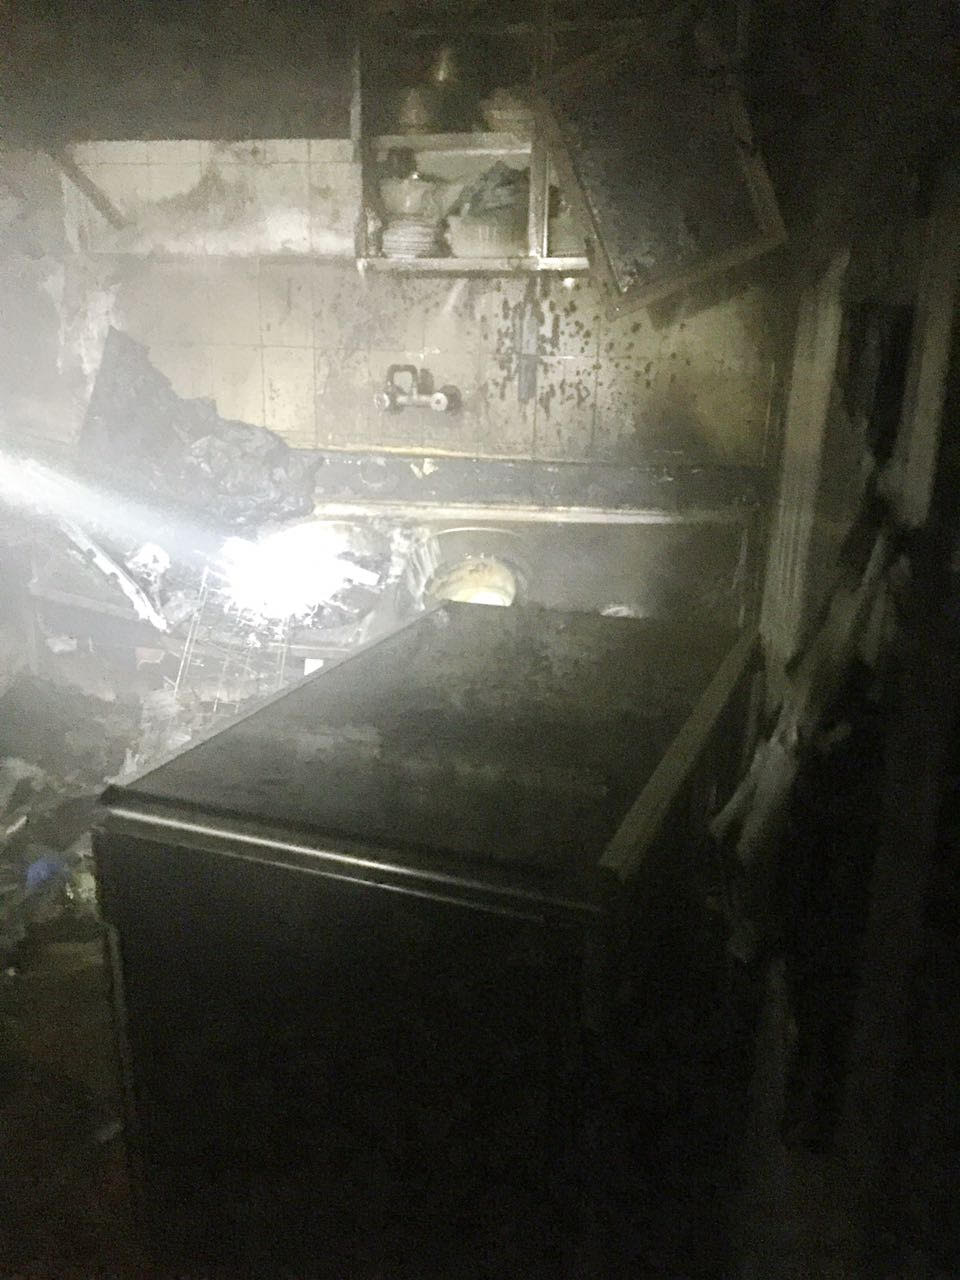 إخلاء عائلة من 6 أشخاص إثر اندلاع حريق بعمارة سكنية في الطائف